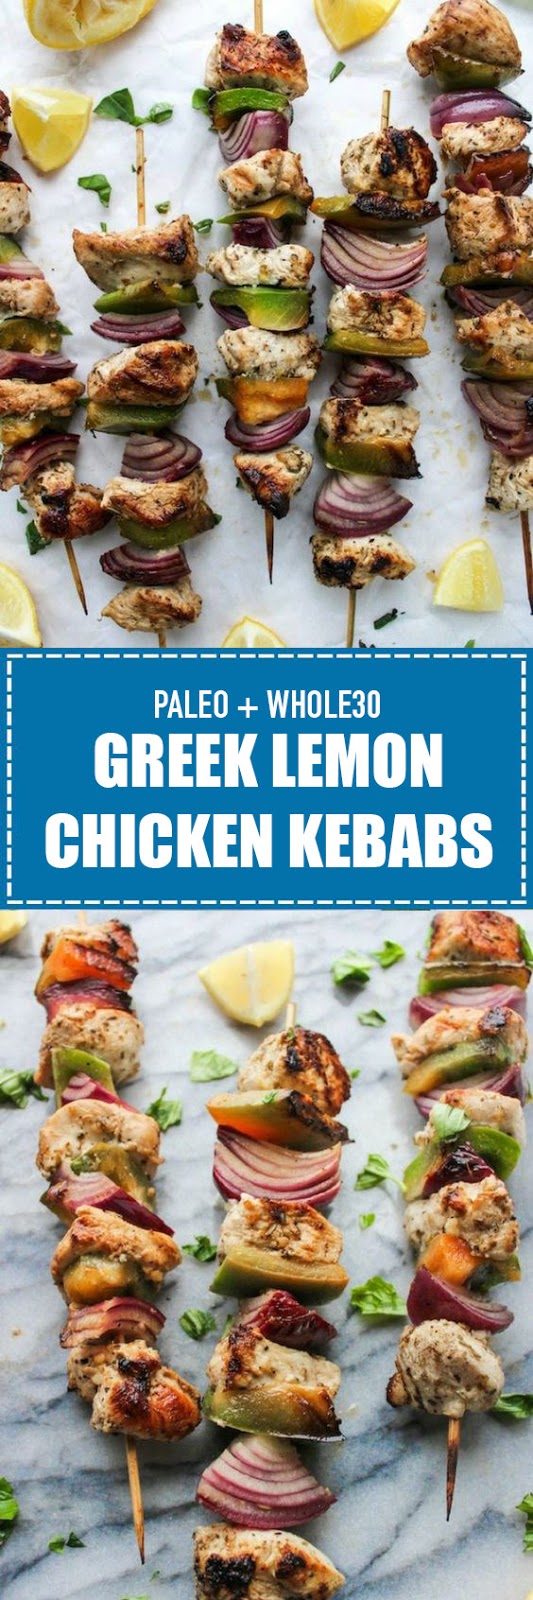 Greek Lemon Chicken Kebabs